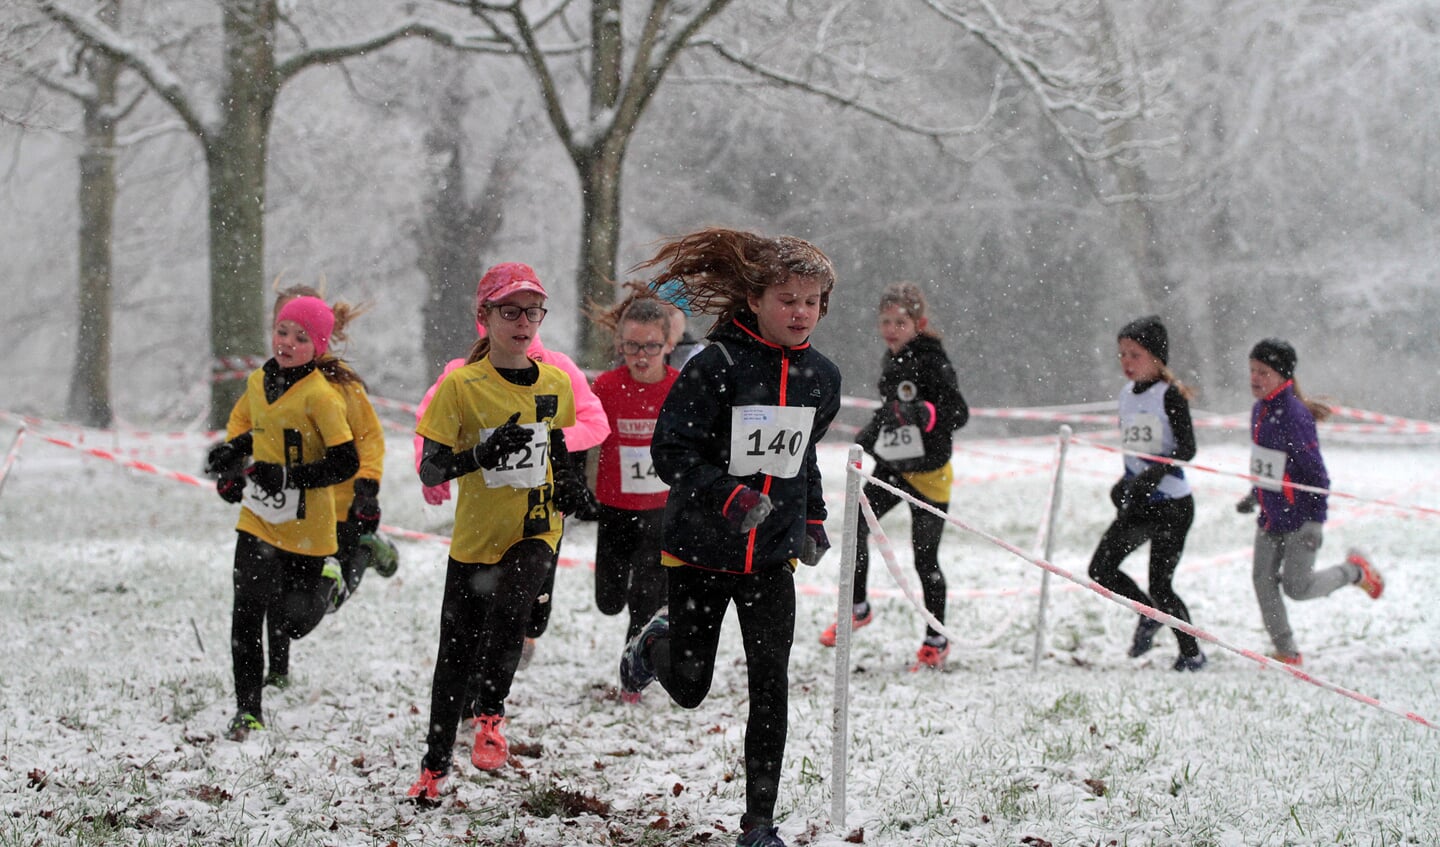 De deelnemers legde onder zware winterse omstandigheden het parcours af. 